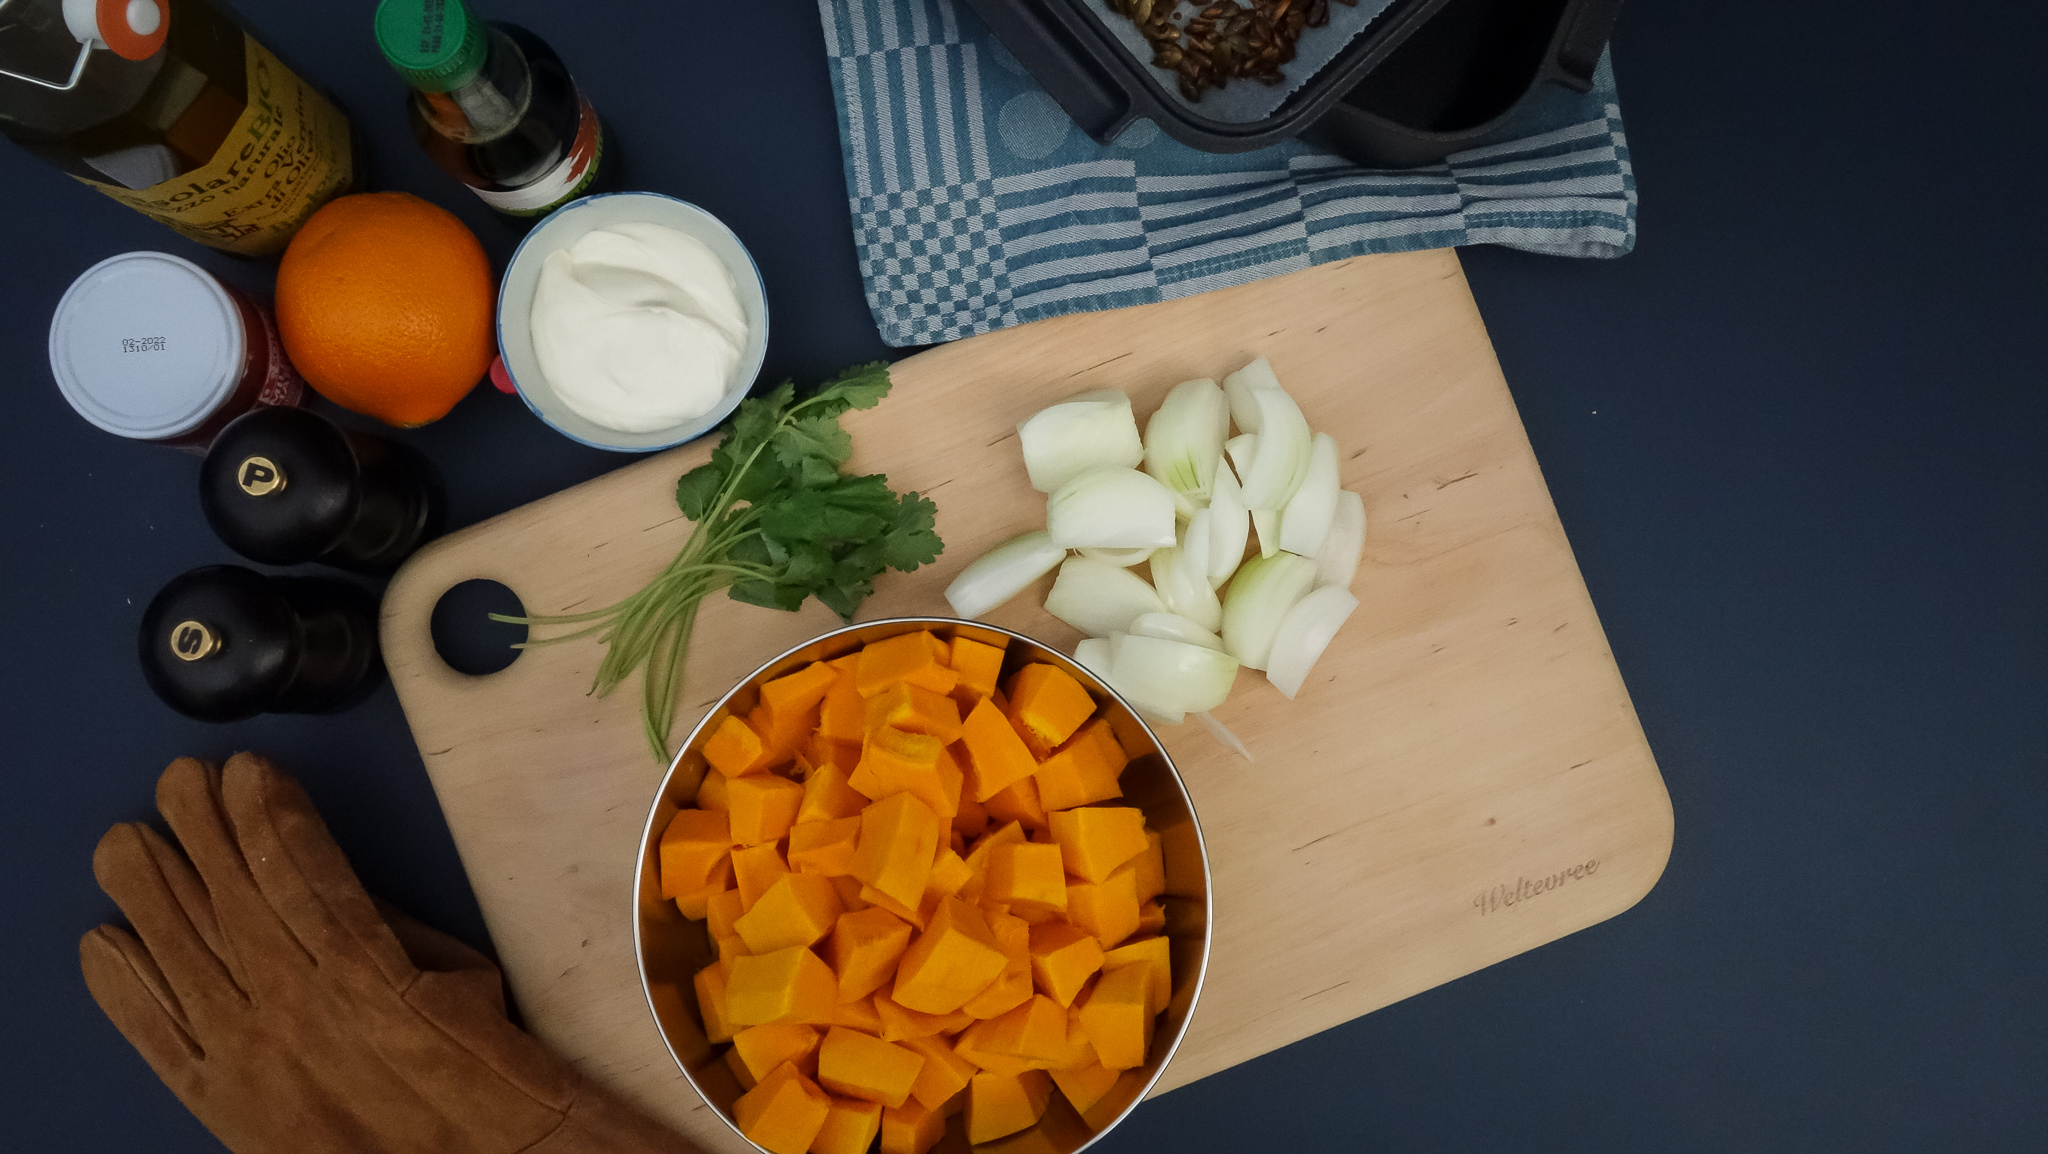 ingredients-pumpkin-onion-cutting-board-Weltevree